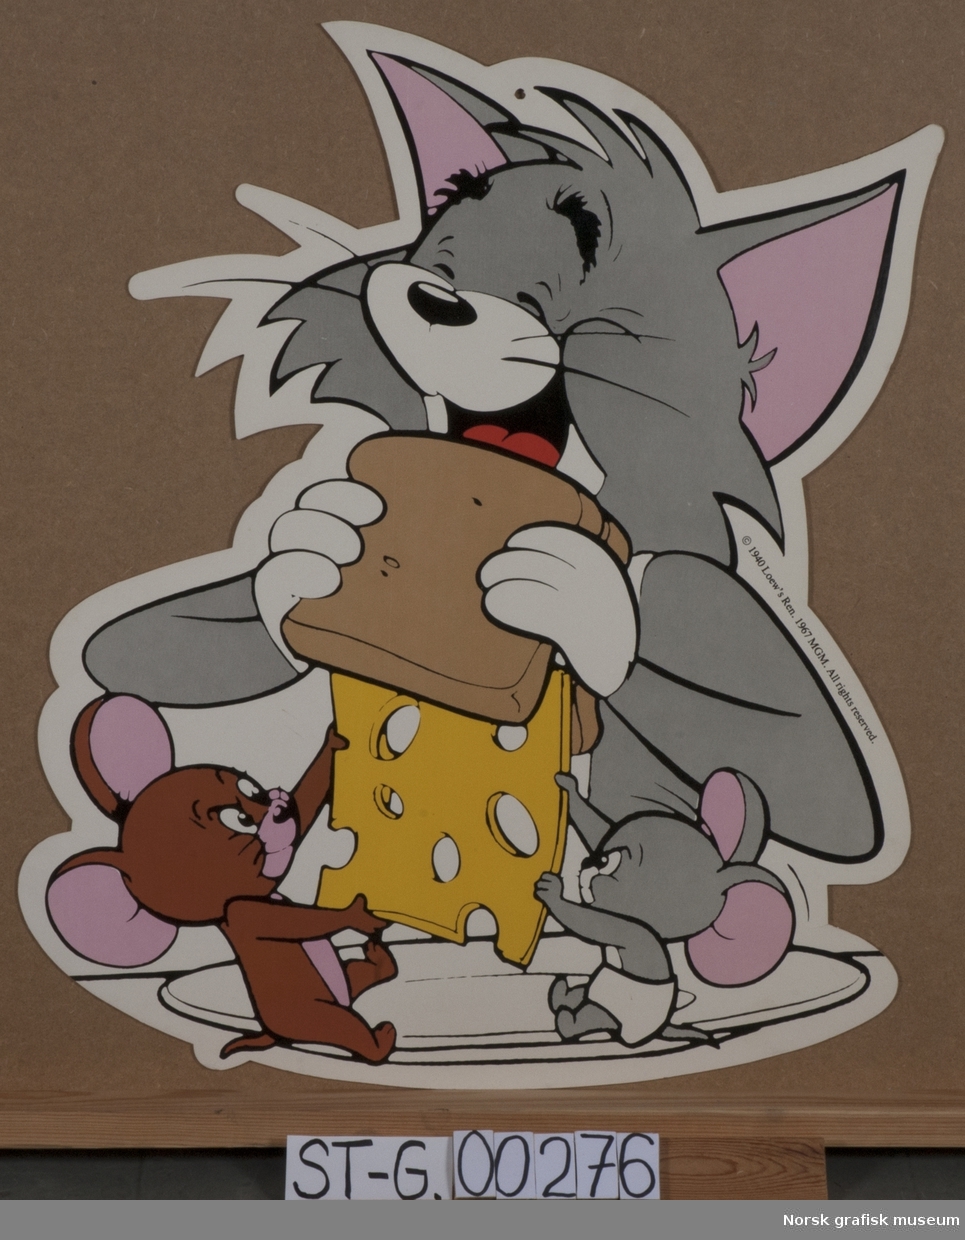 Reklam for ost med firgurene Tom og Jerry.